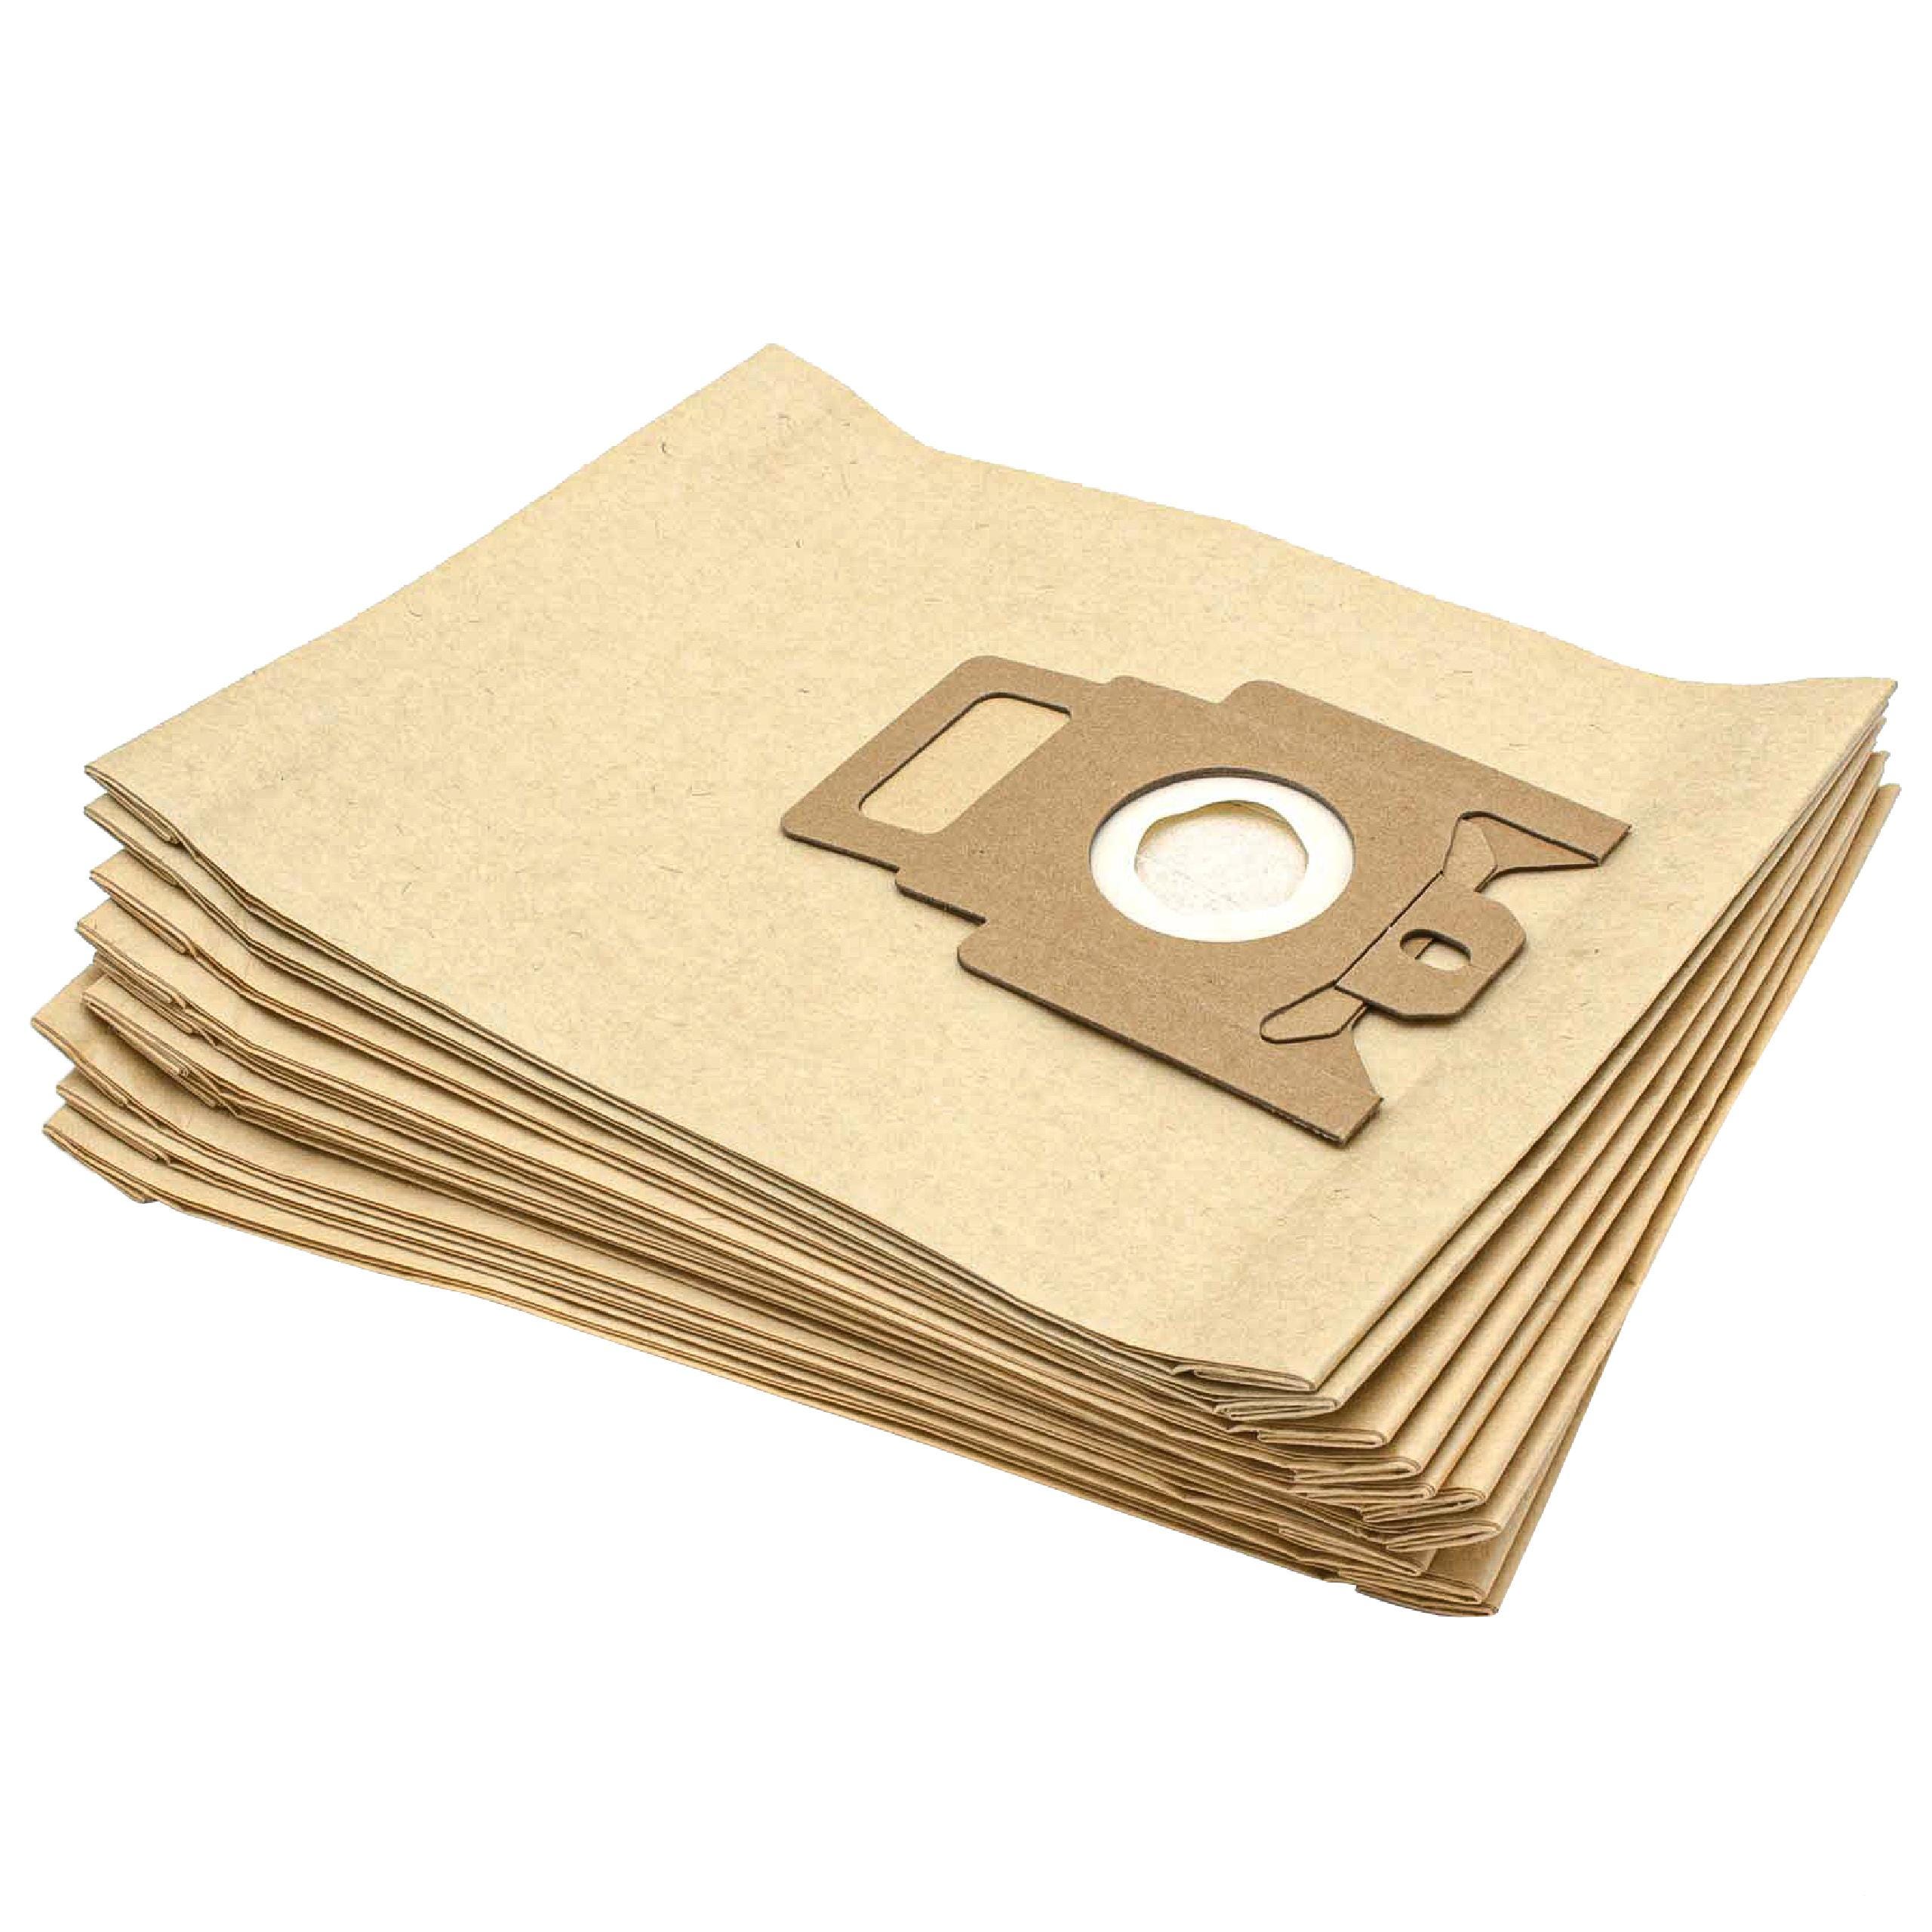 Vhbw 10x sacchetto dell'aspirapolvere compatibile con Miele Allergy Control  Plus S140 aspirapolvere - in carta, Typ M, 28cm x 19,5cm, color sabbia